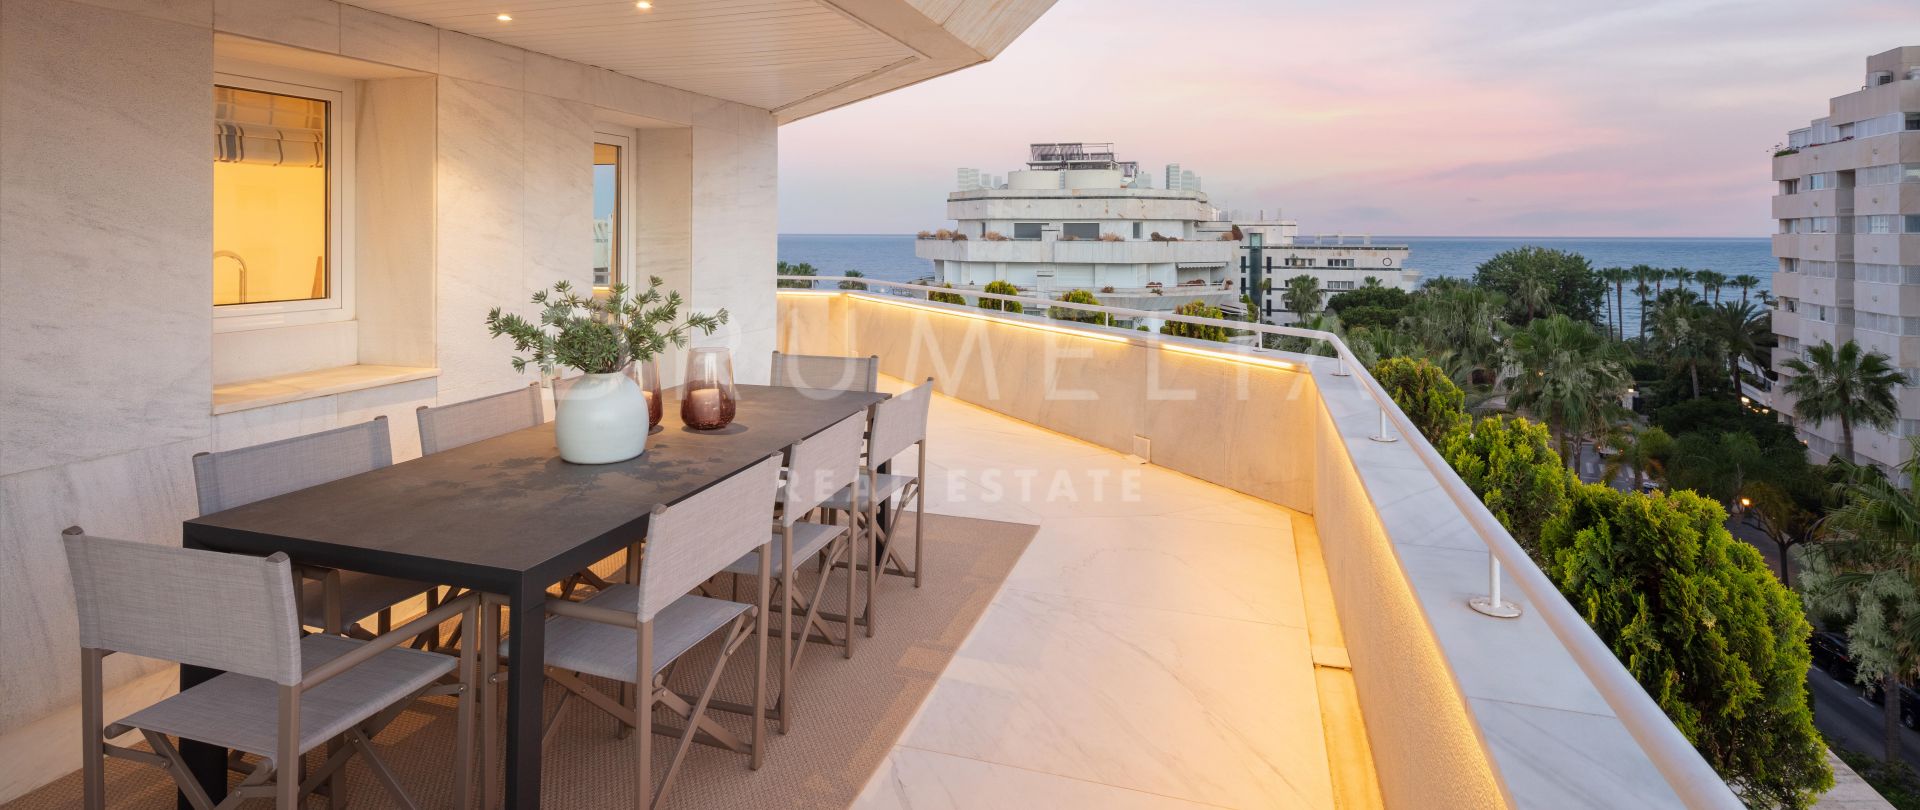 Poseidon 1 - Magnifique duplex penthouse haut de gamme avec vue imprenable sur la mer, Marbella Golden Mile